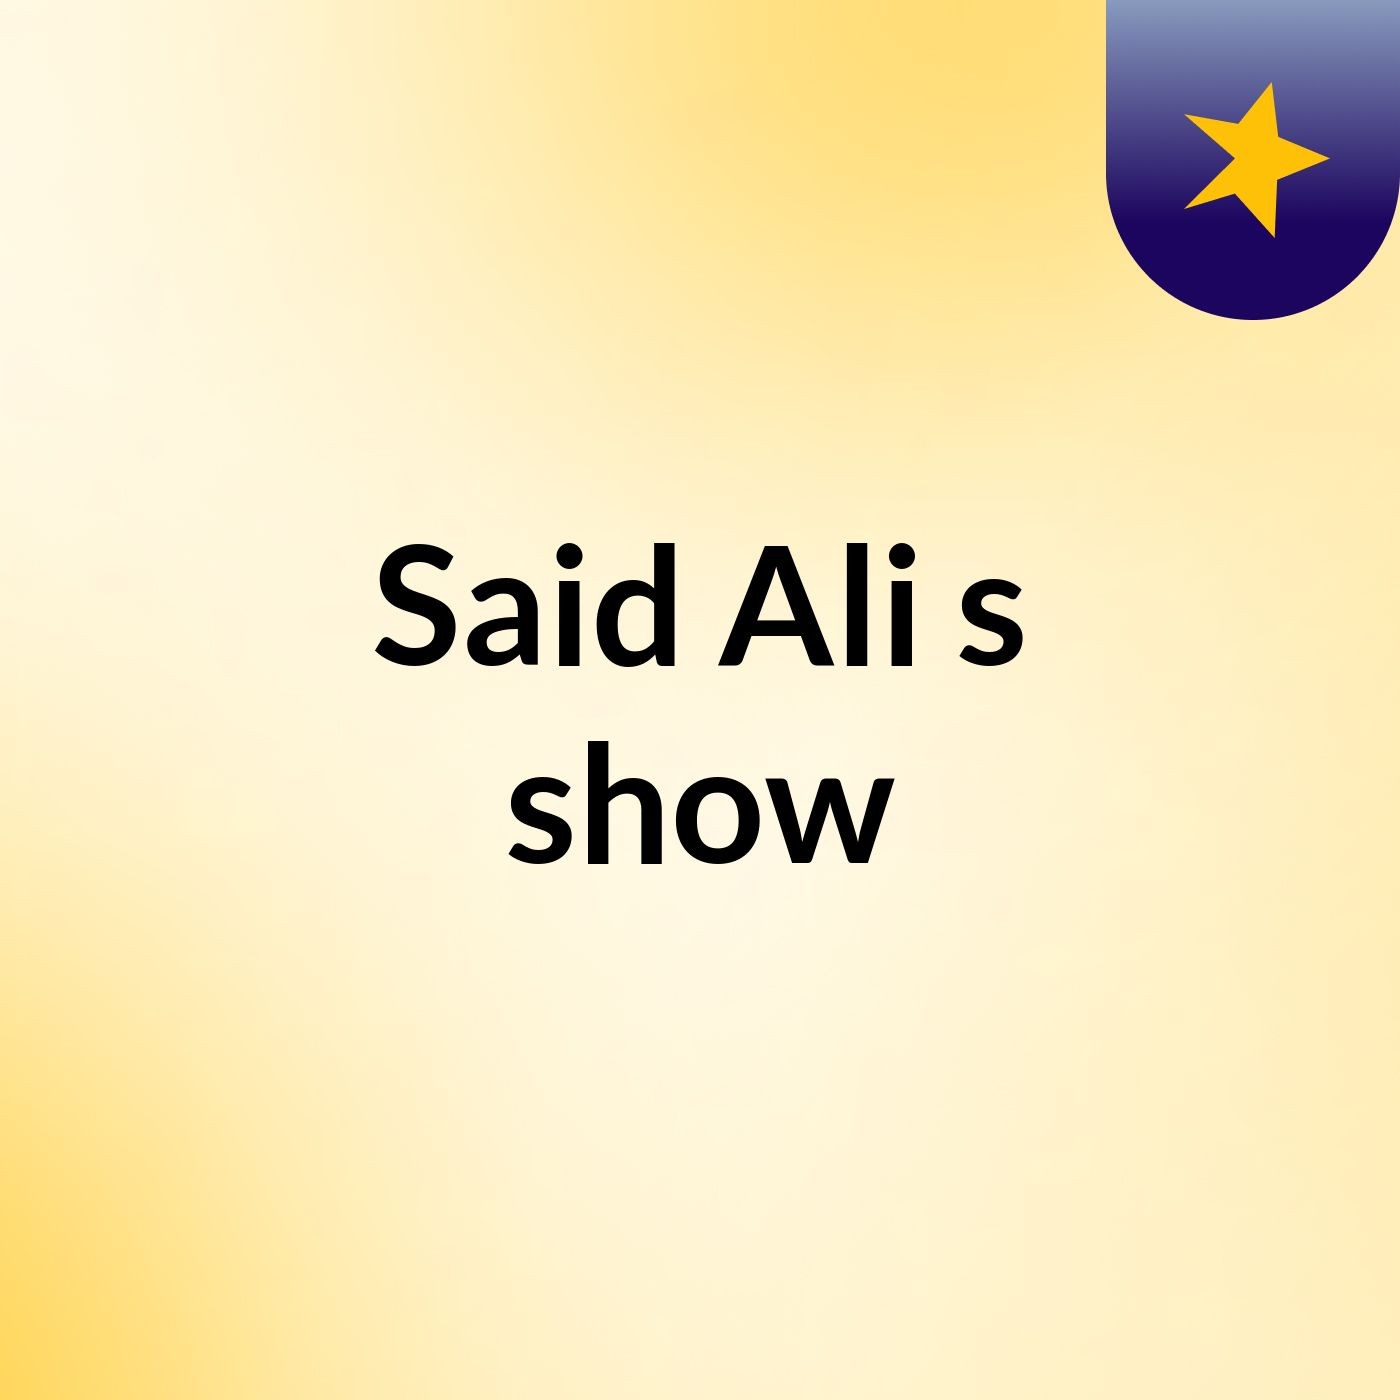 Said Ali's show